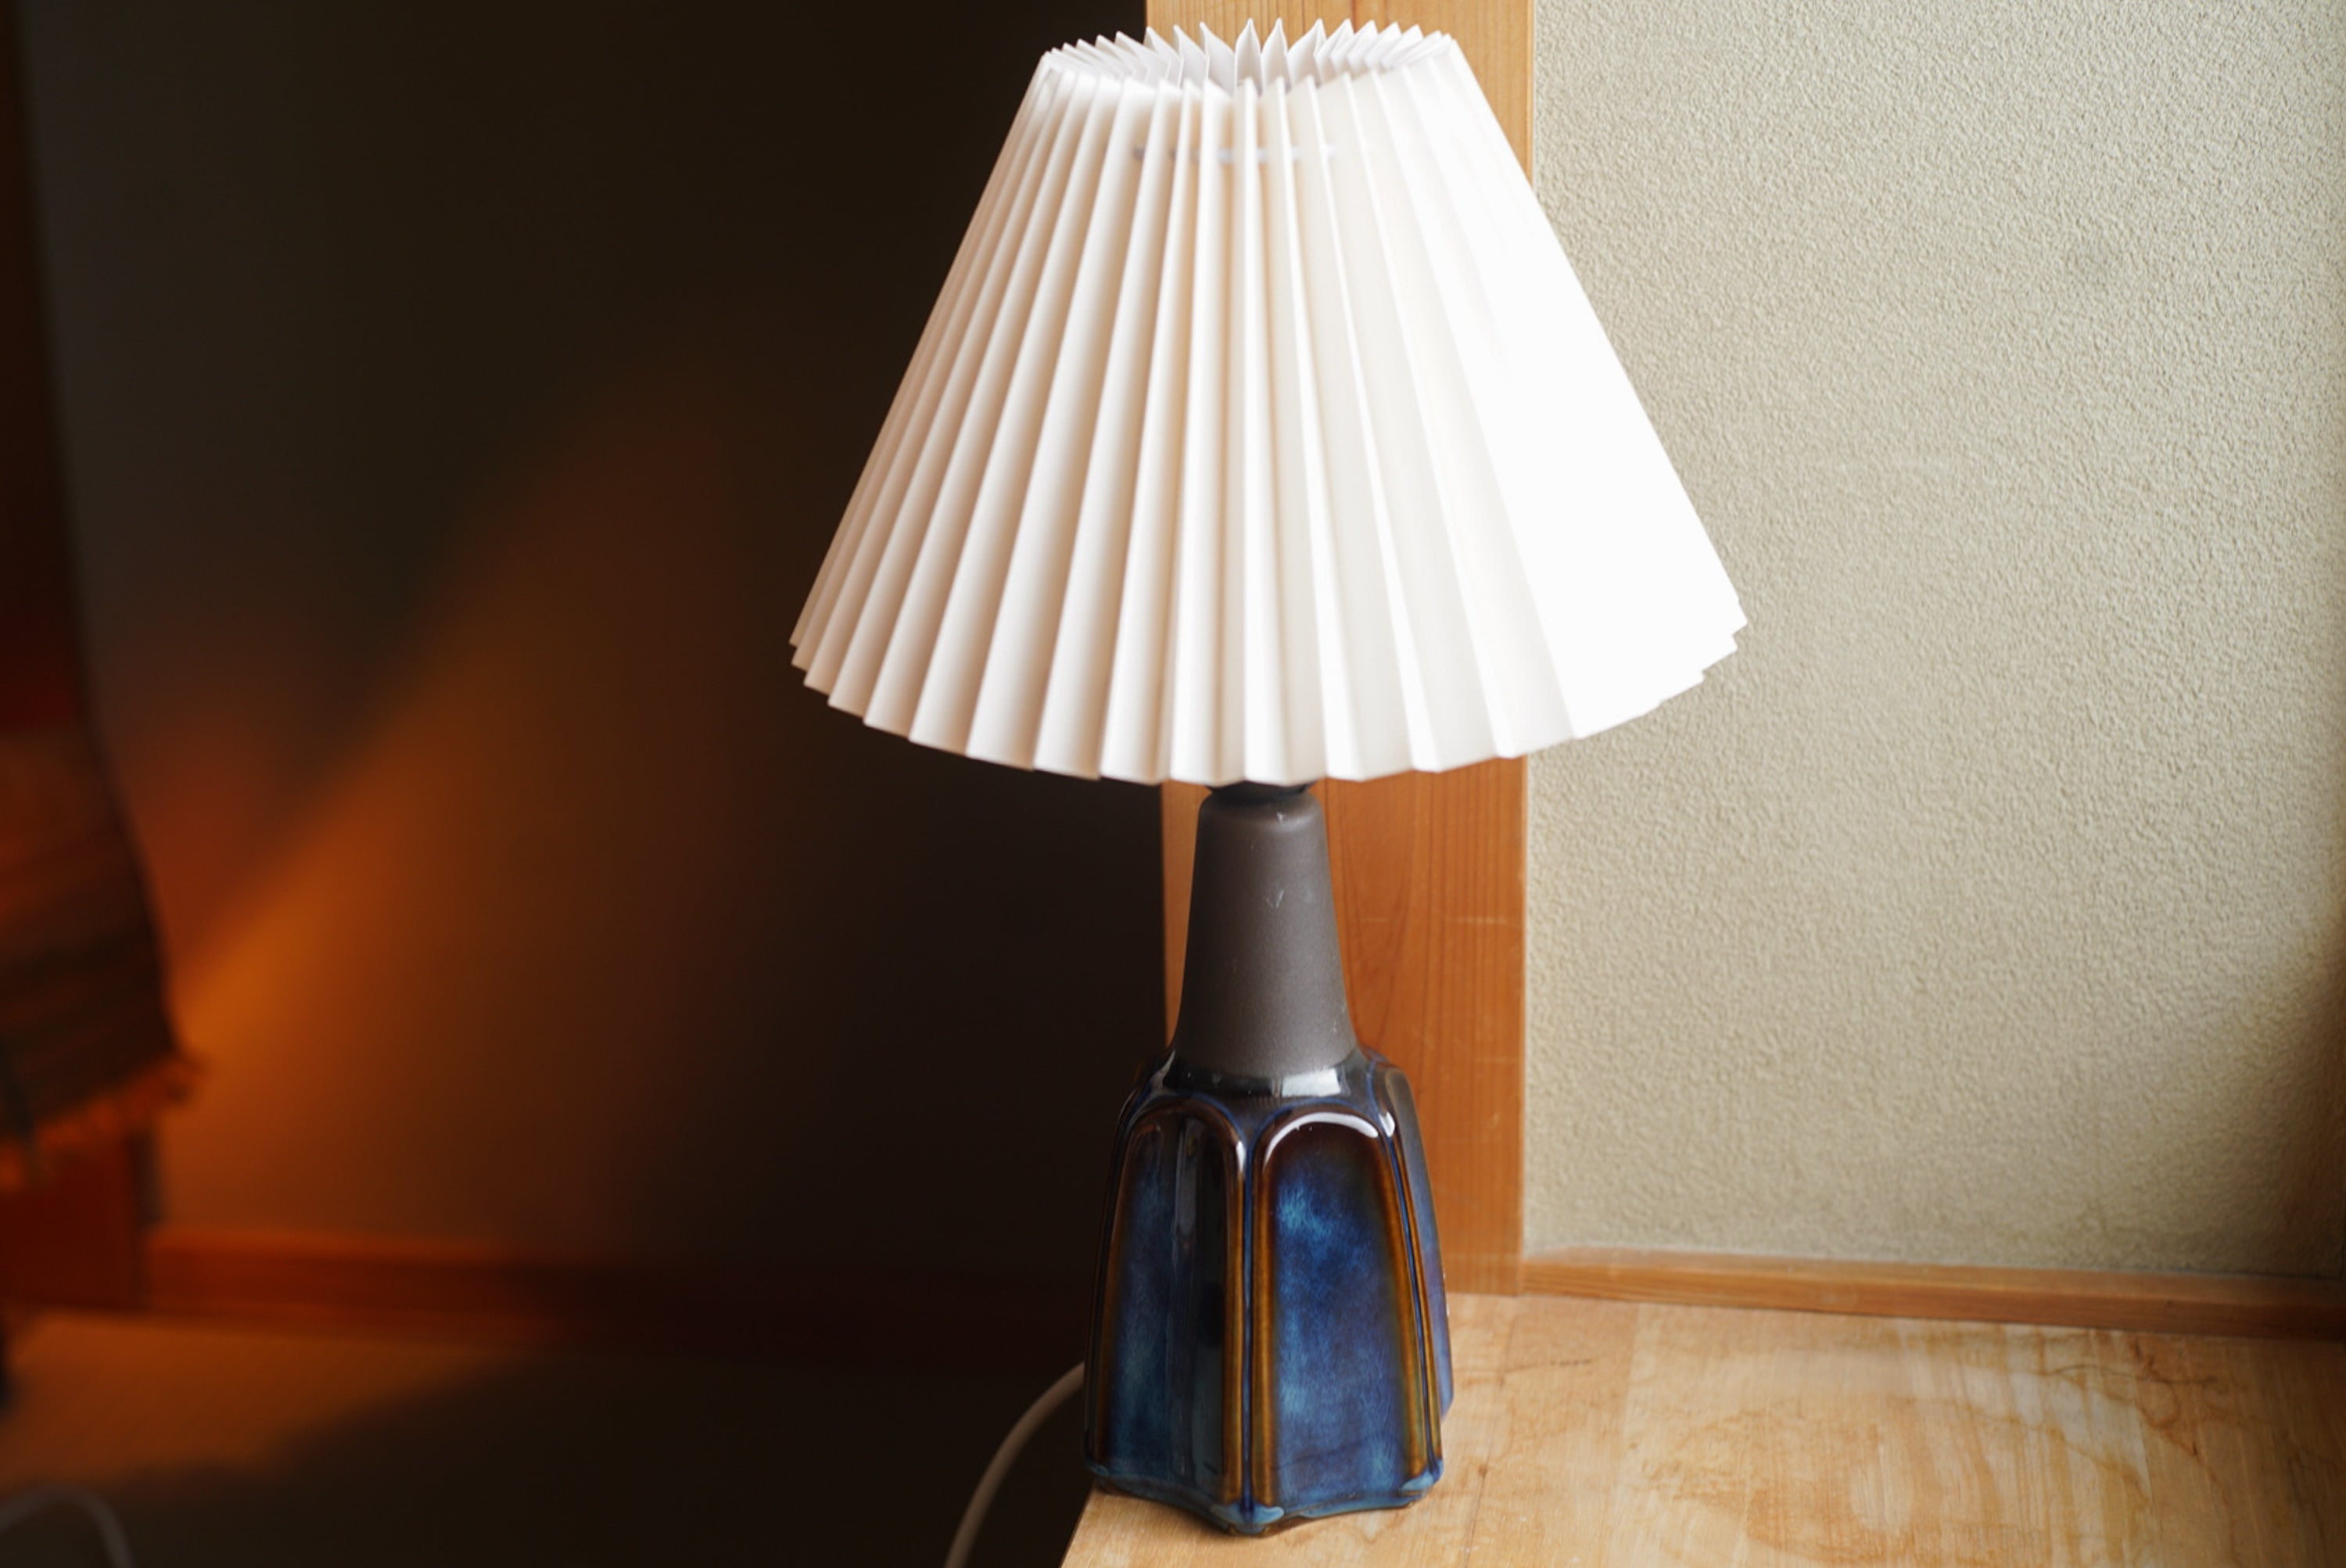 Lampe de table en grès fabriquée à la main par Einar Jphansen pour Danish Søholm, situé sur l'île de Bornholm au Danemark dans les années 1960.

Estampillé et signé sur la base.

Vendu sans abat-jour. La hauteur inclut la douille. Entièrement